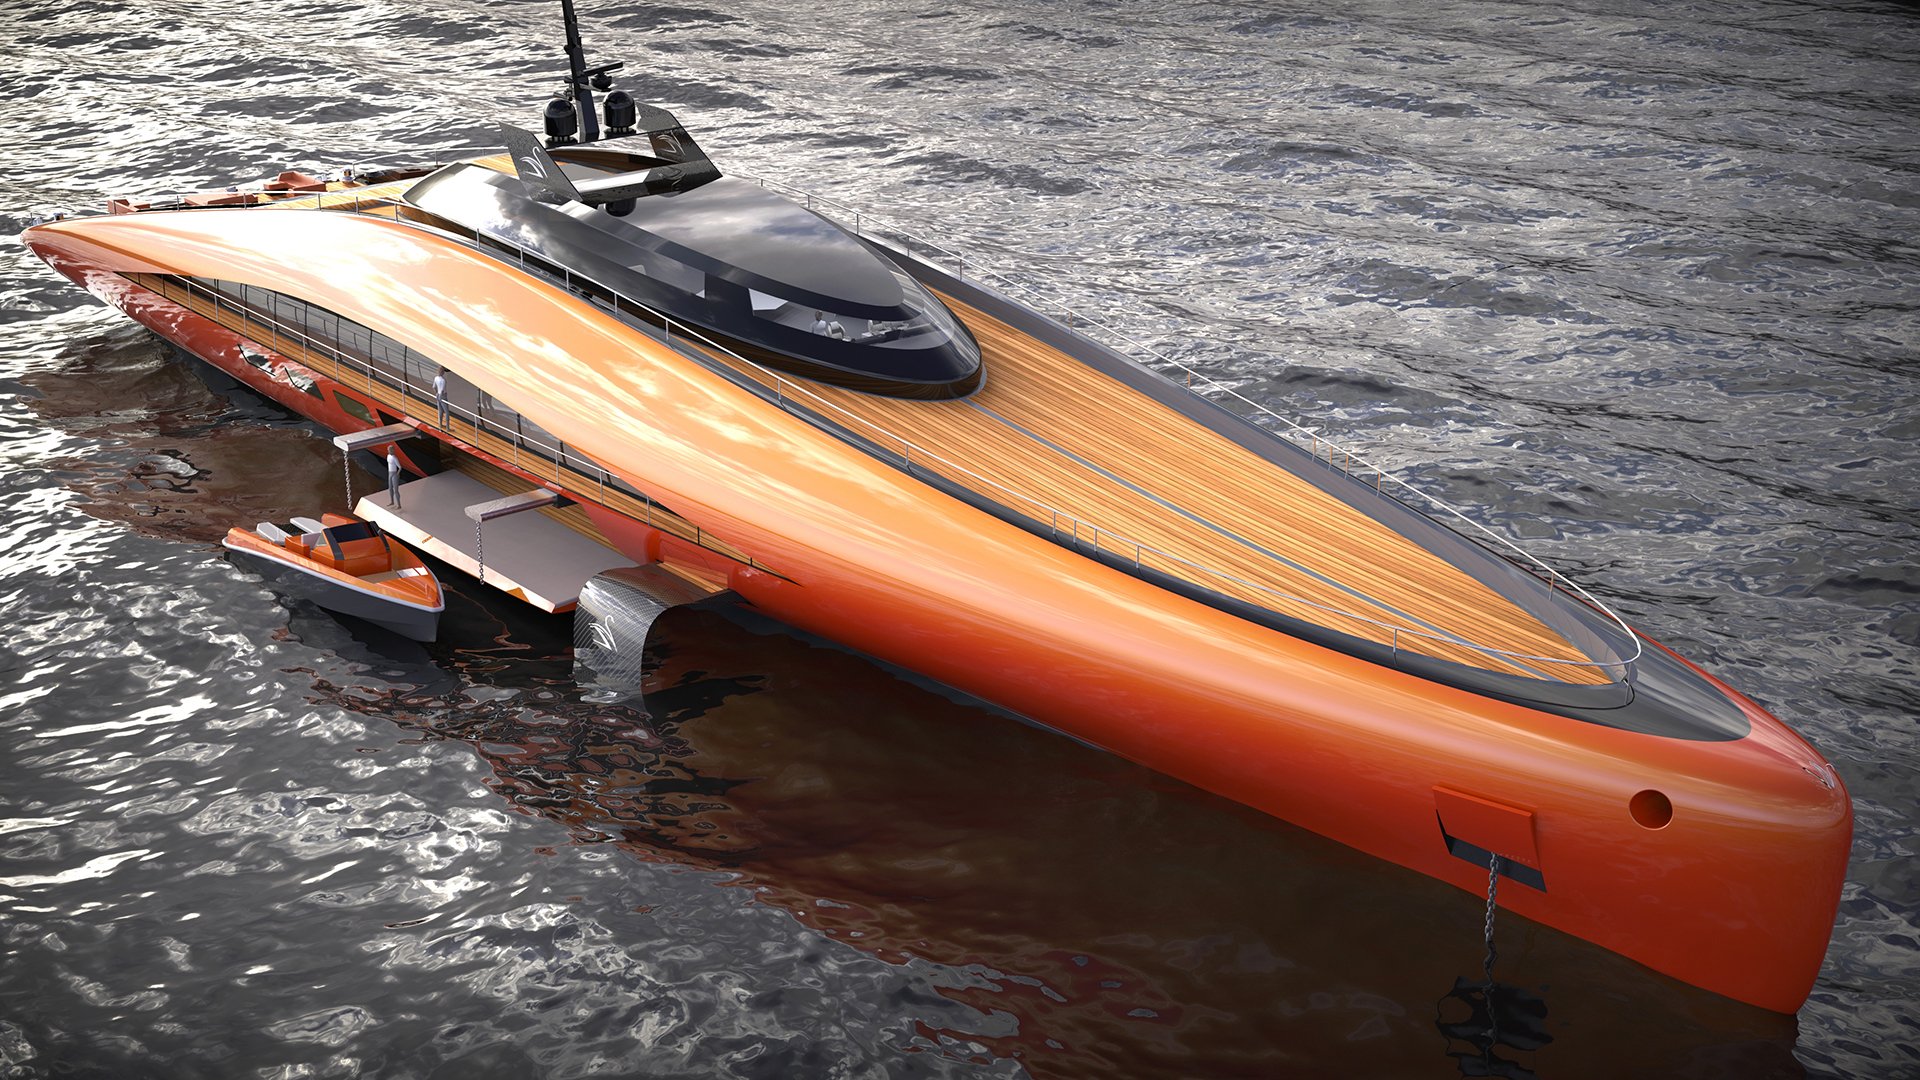 imagen 2 de Plectrum Hydrofoil Yacht, el diseño de Lazzarini que tiene todo lo que puedas soñar en un yate de lujo.